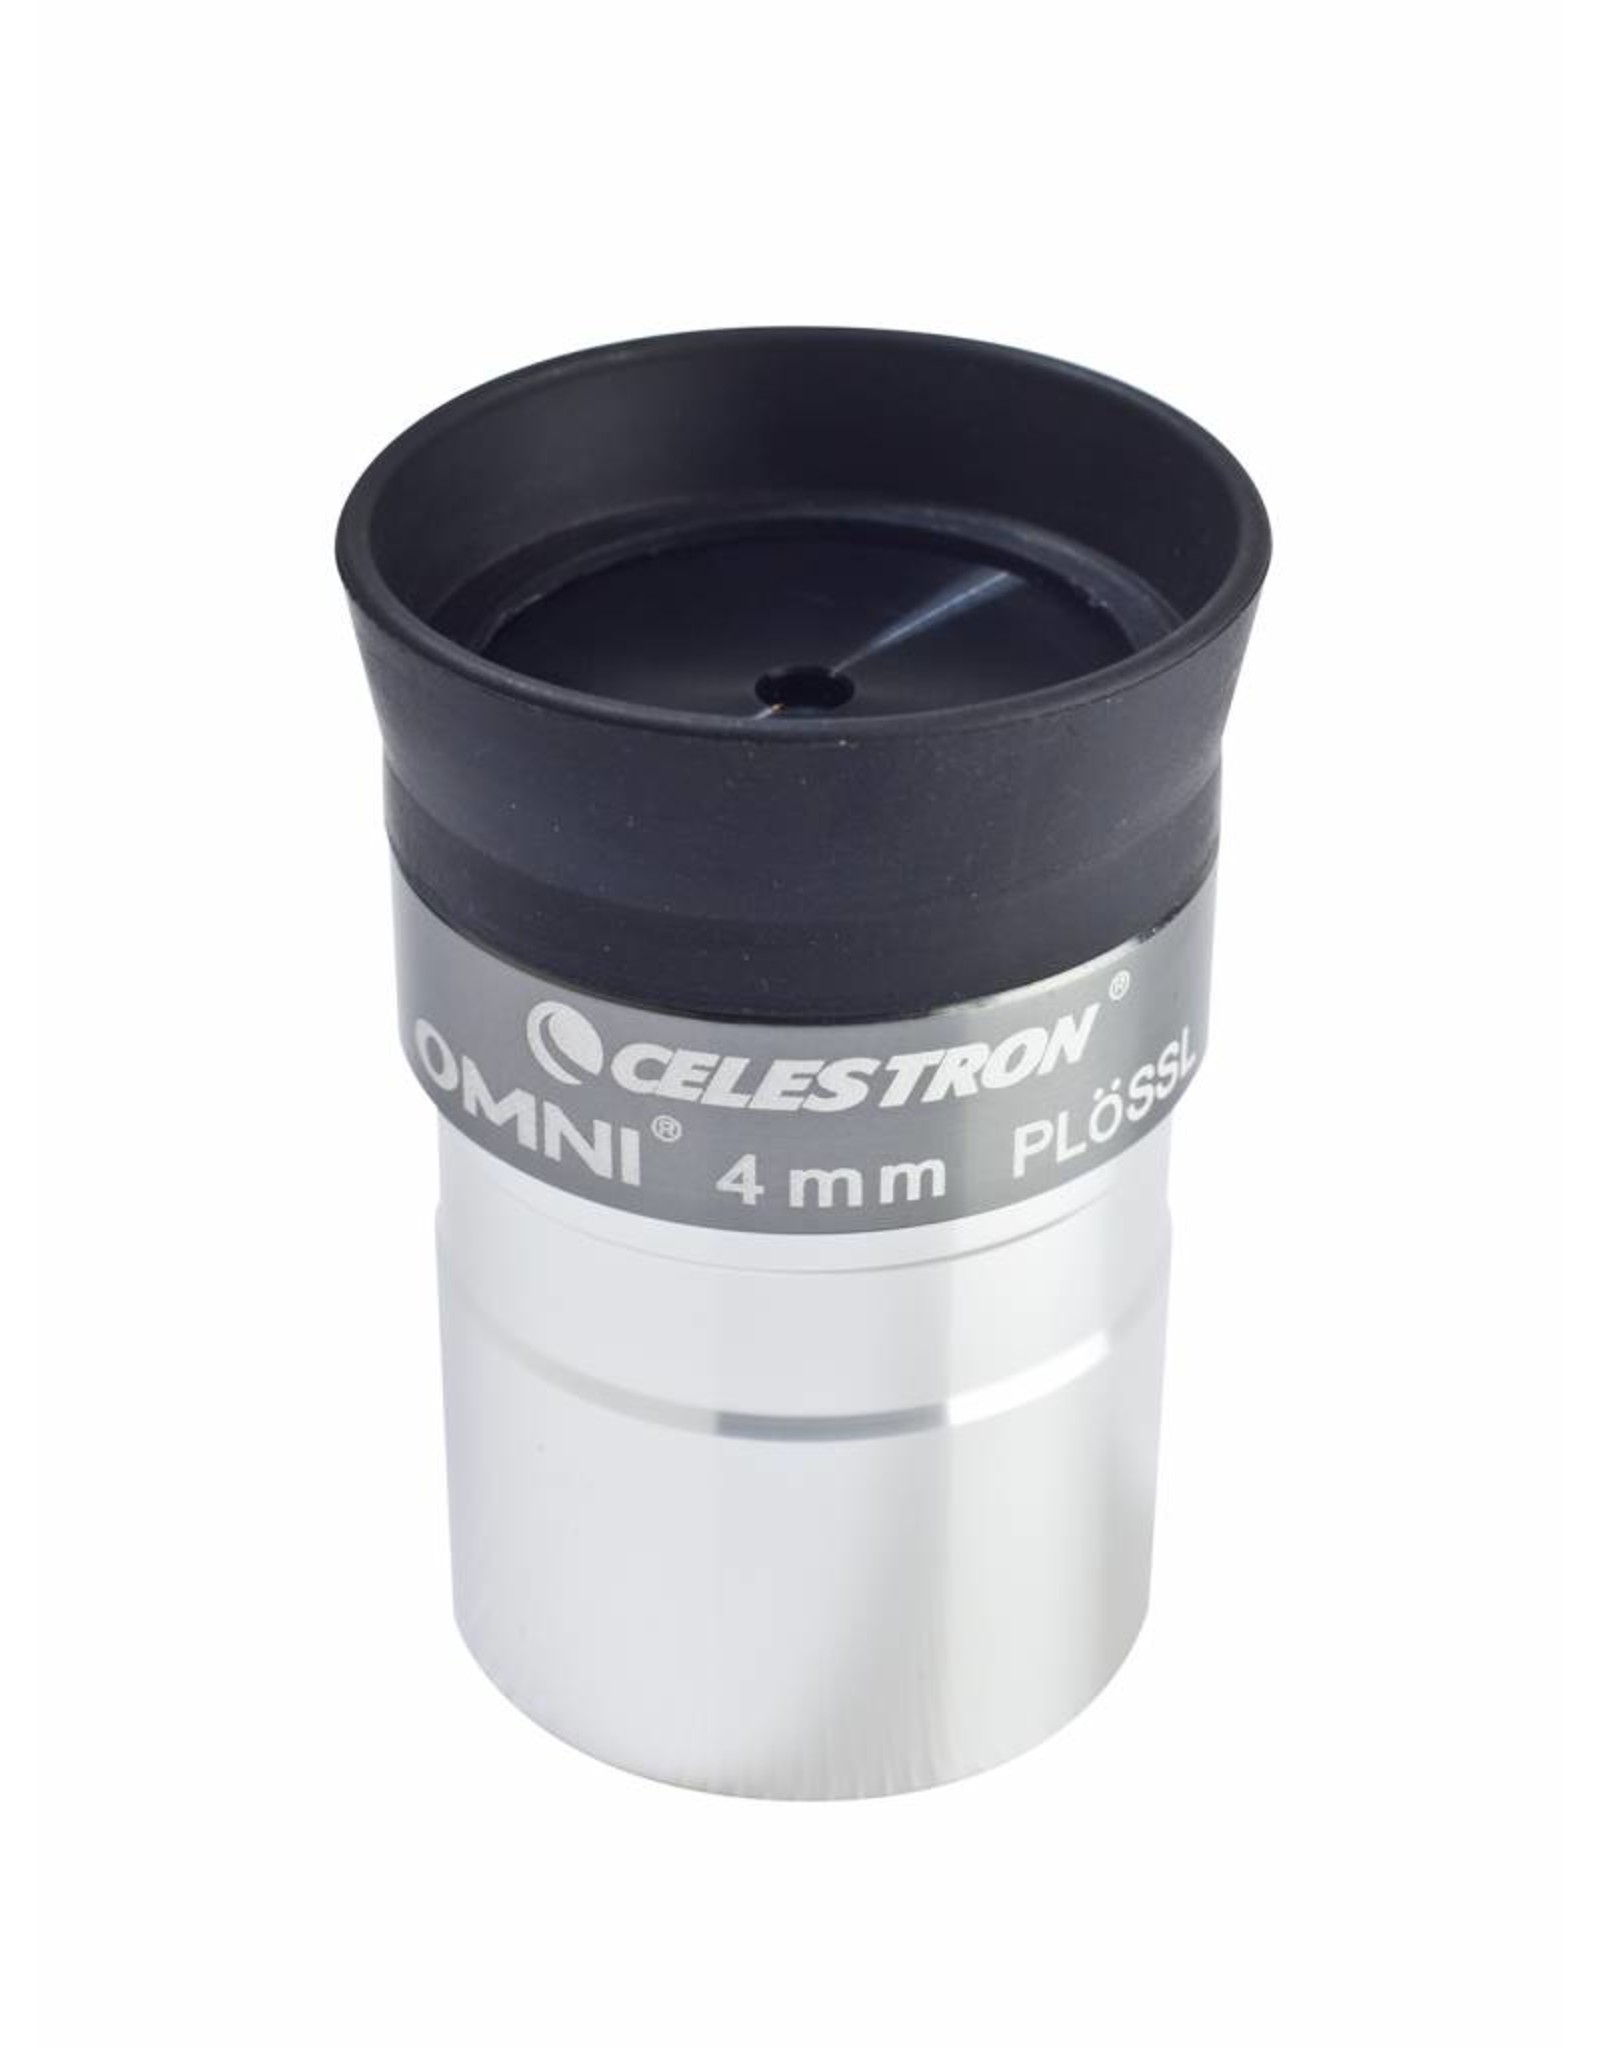 Celestron Celestron Omni Series 1.25 in - 4mm